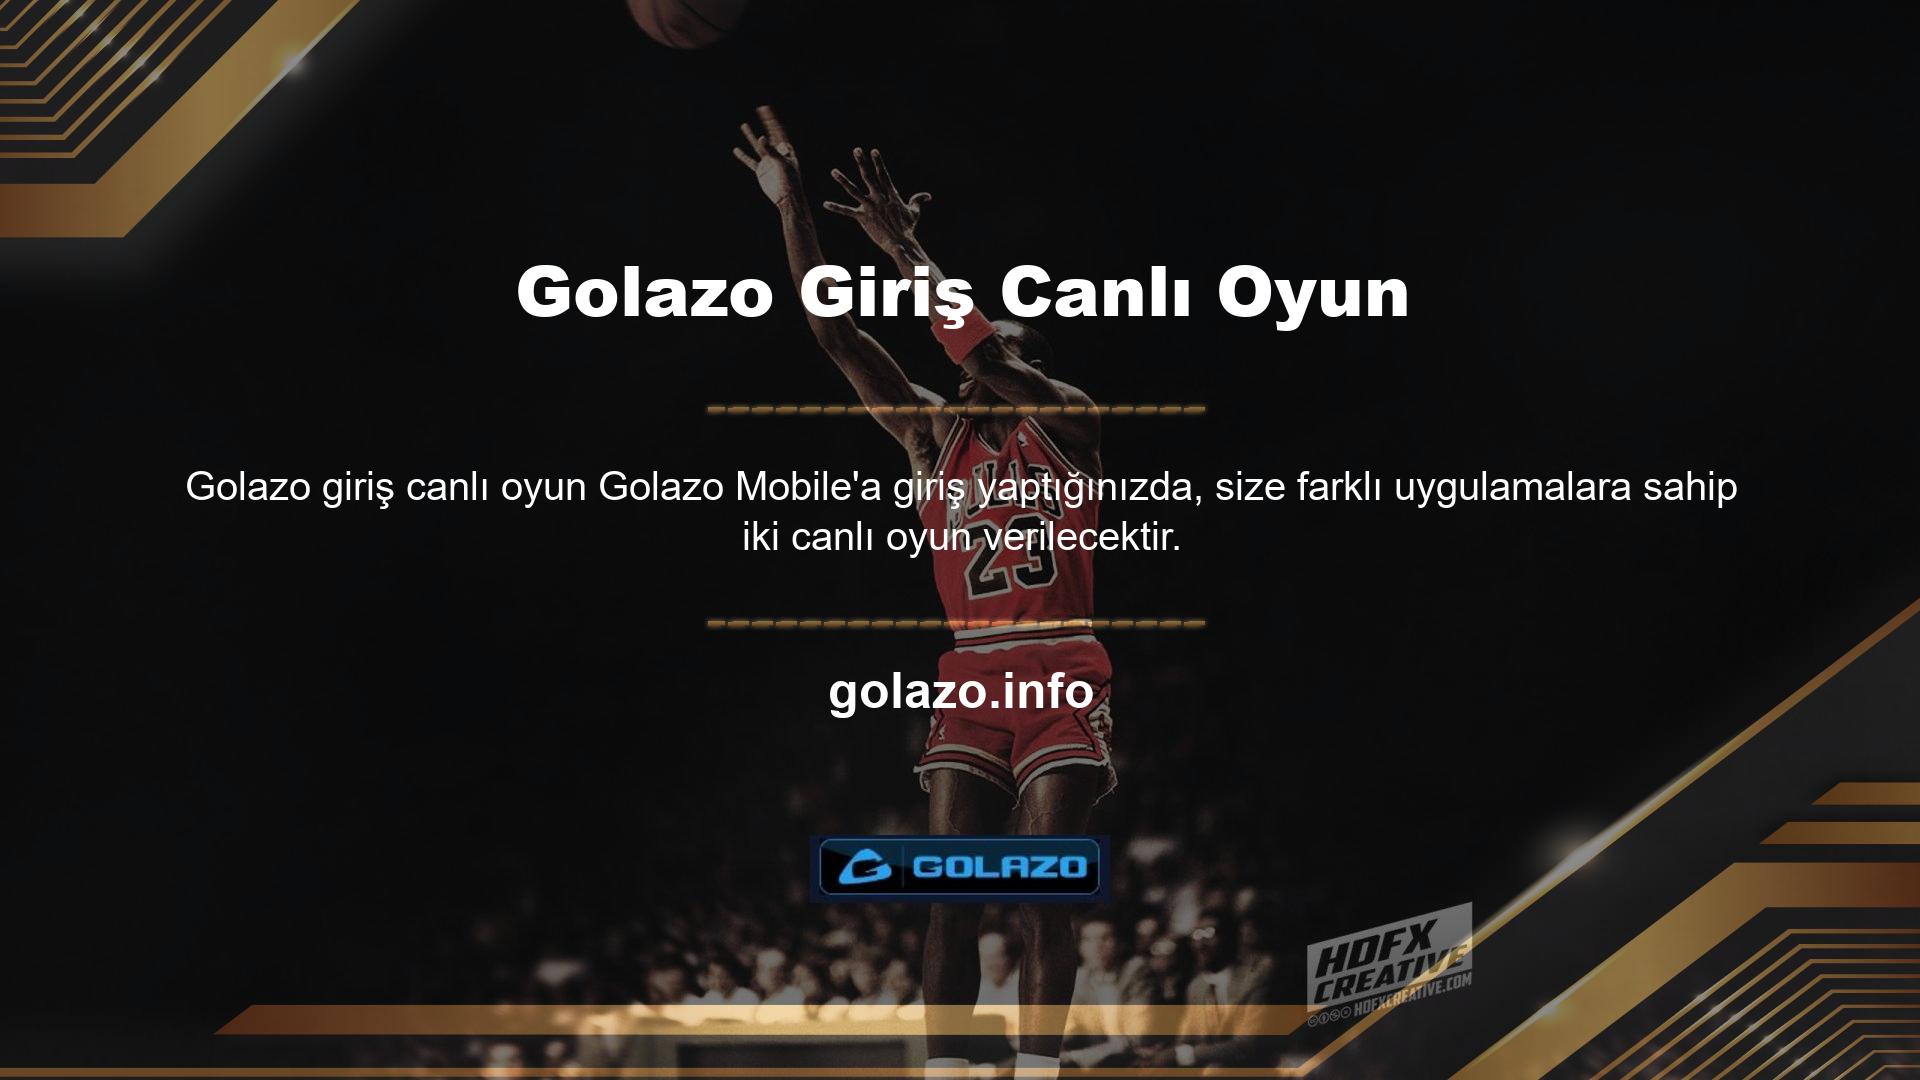 Golazo Android mağazasından ücretsiz olarak indirin ve yükleyin Golazo iOS mağazası ücretsiz indirme ve kurulum sunar